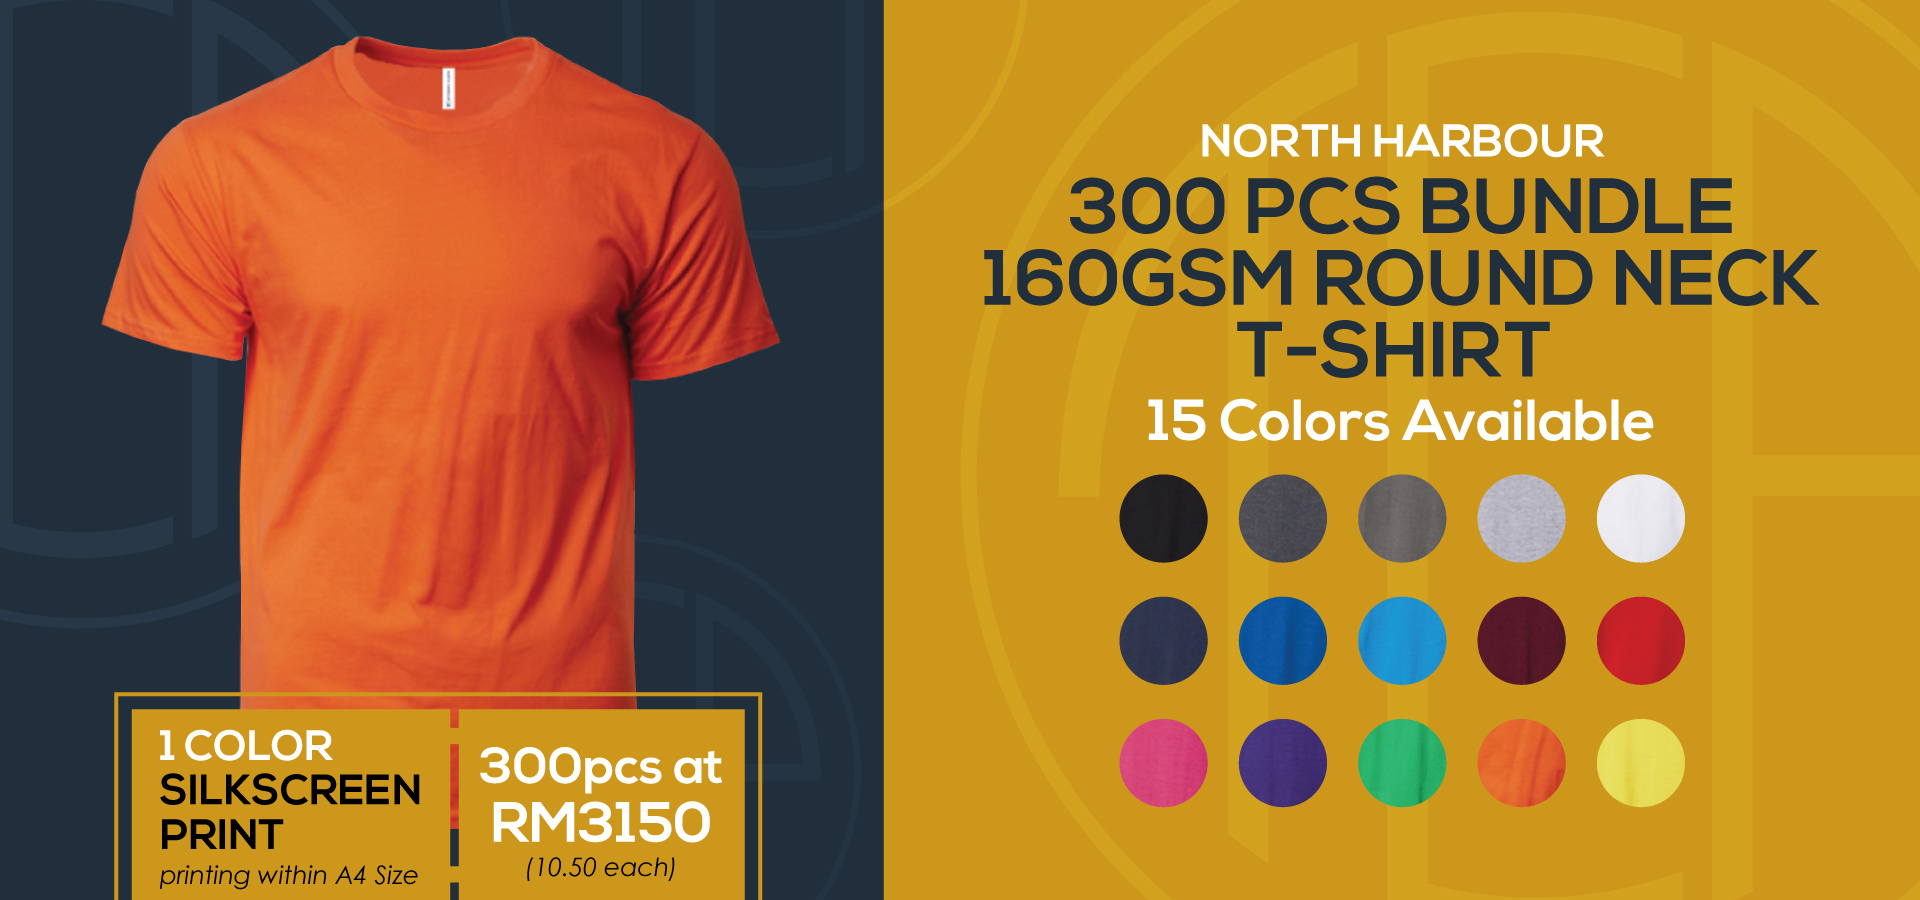 Promotion-Page-Silkscreen-Print-300PCS-North-Harbour-T-Shirt-Bundle